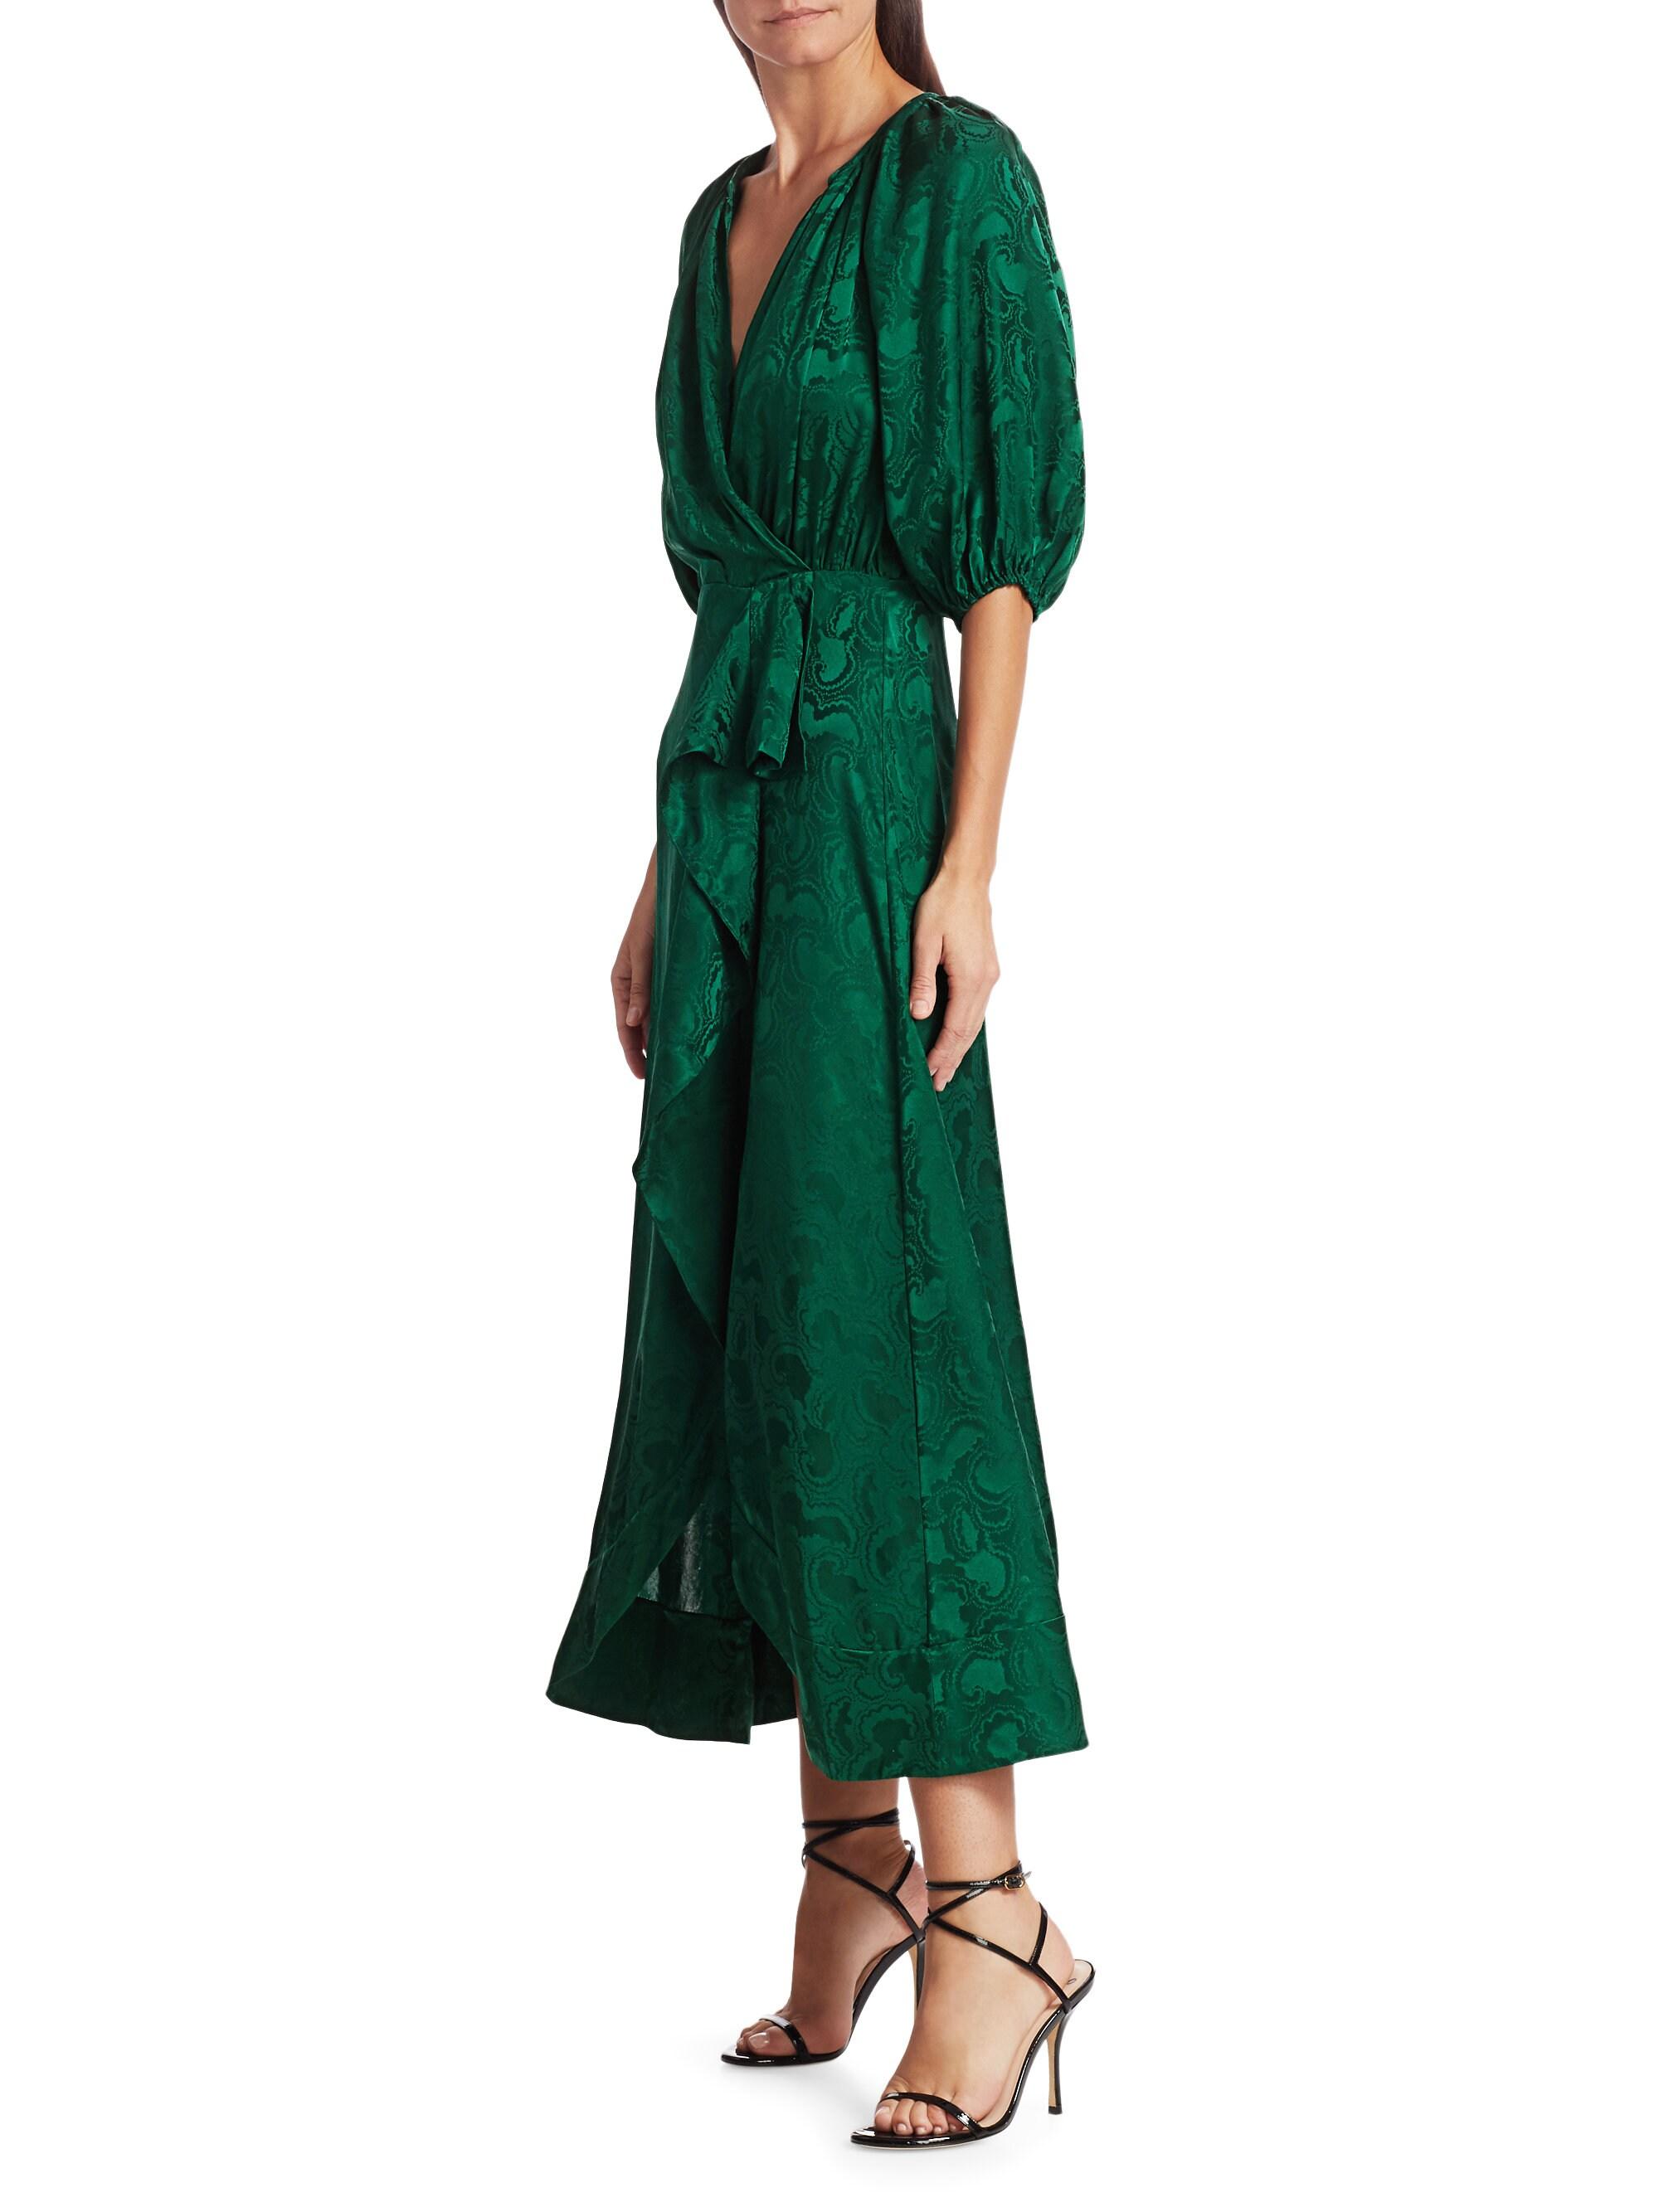 Saloni Olivia Draped Silk Dress in Forest (Green) - Lyst